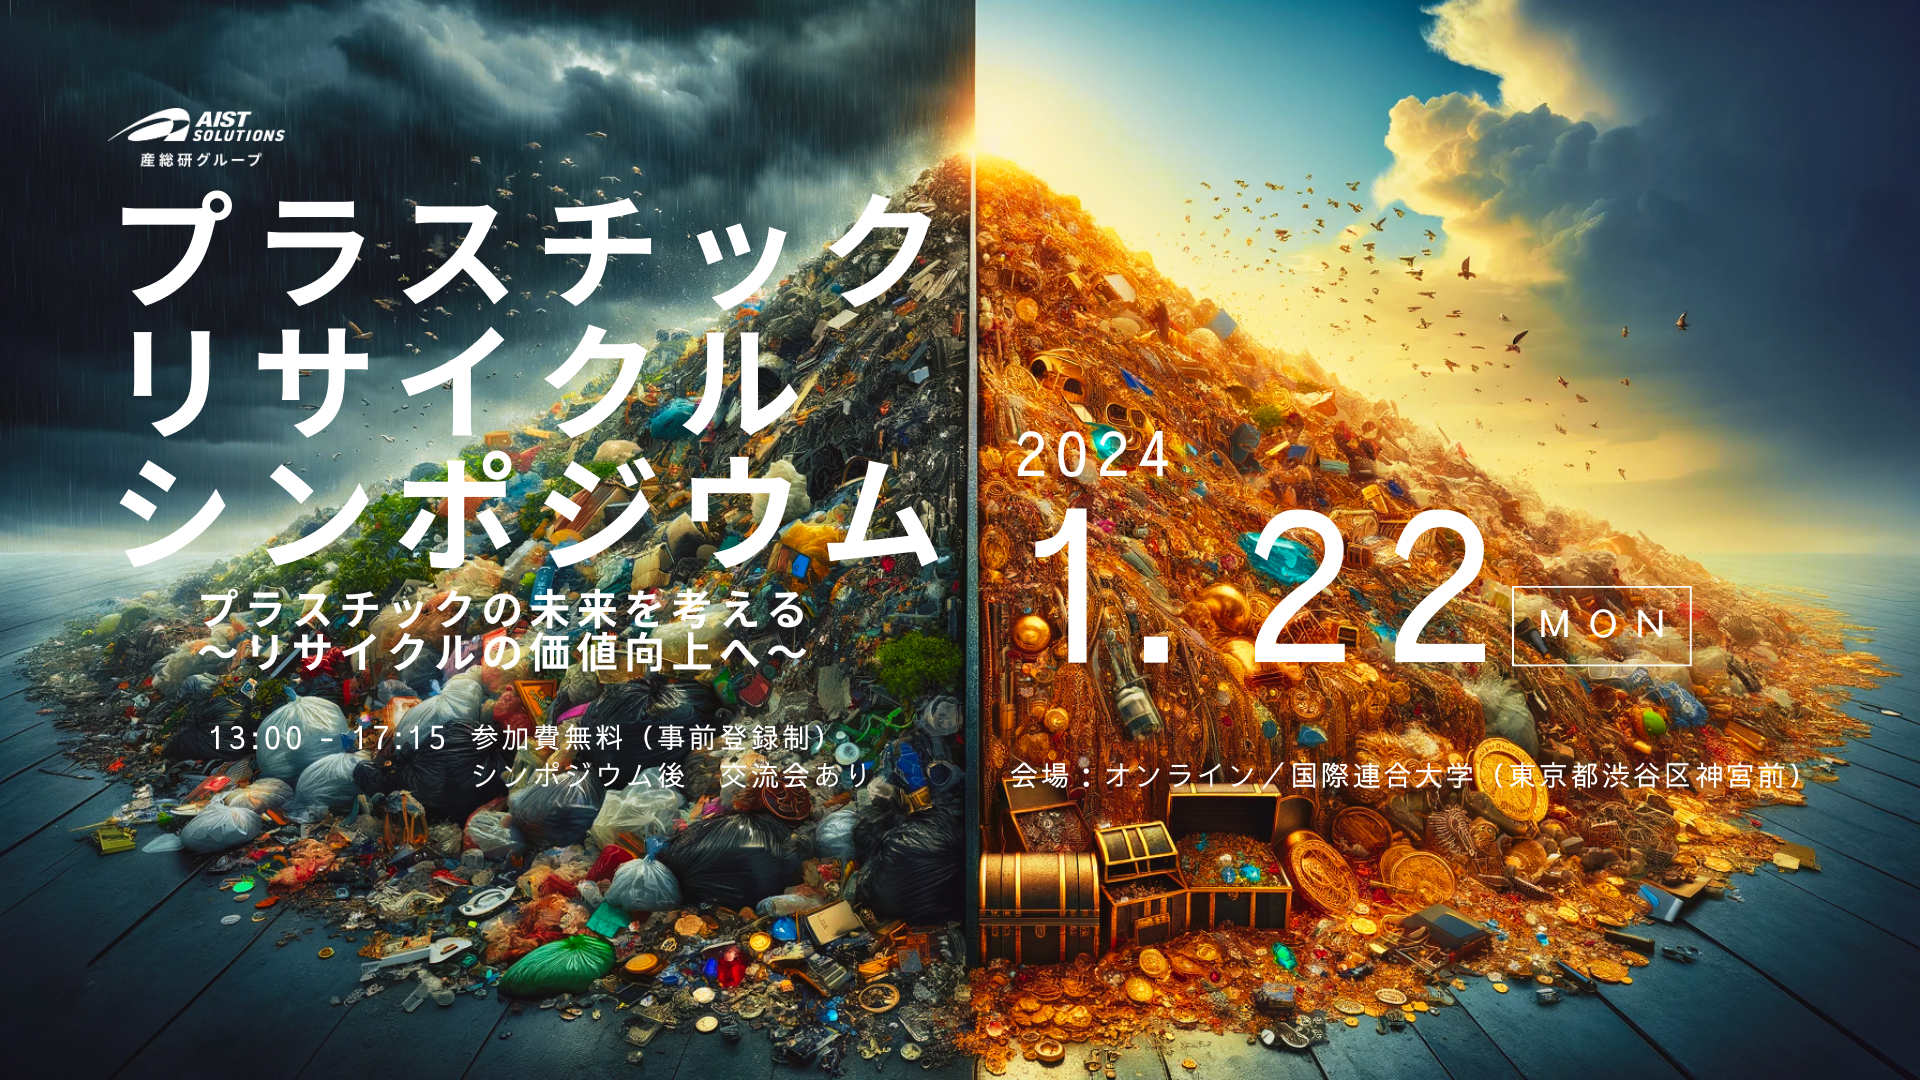 【イベント】プラスチックの未来を考える〜リサイクルの価値向上へ〜に関するページ